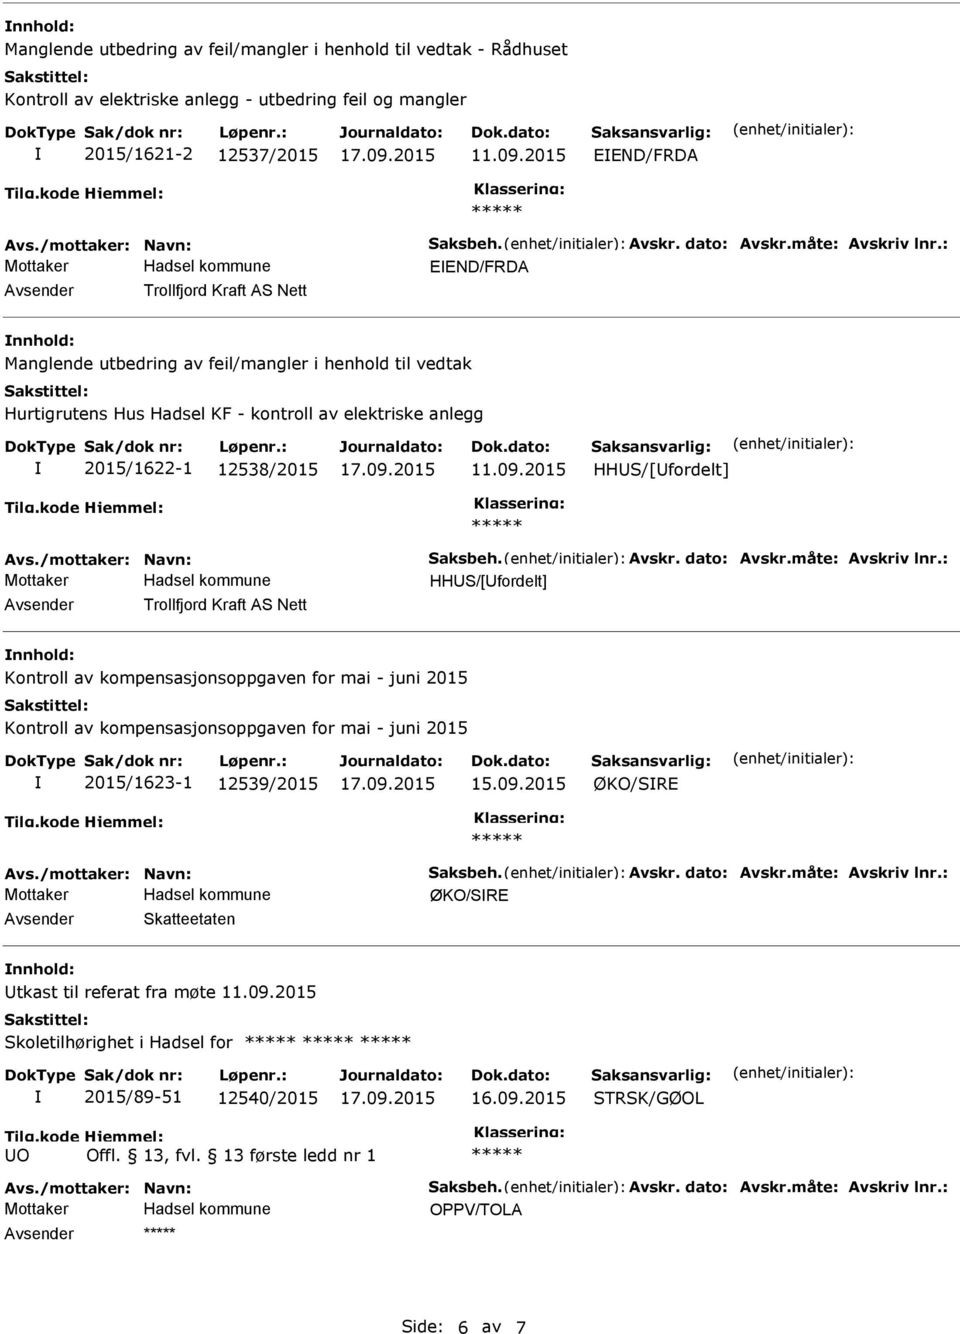 HHS/[fordelt] HHS/[fordelt] Trollfjord Kraft AS Nett nnhold: Kontroll av kompensasjonsoppgaven for mai - juni 2015 Kontroll av kompensasjonsoppgaven for mai - juni 2015